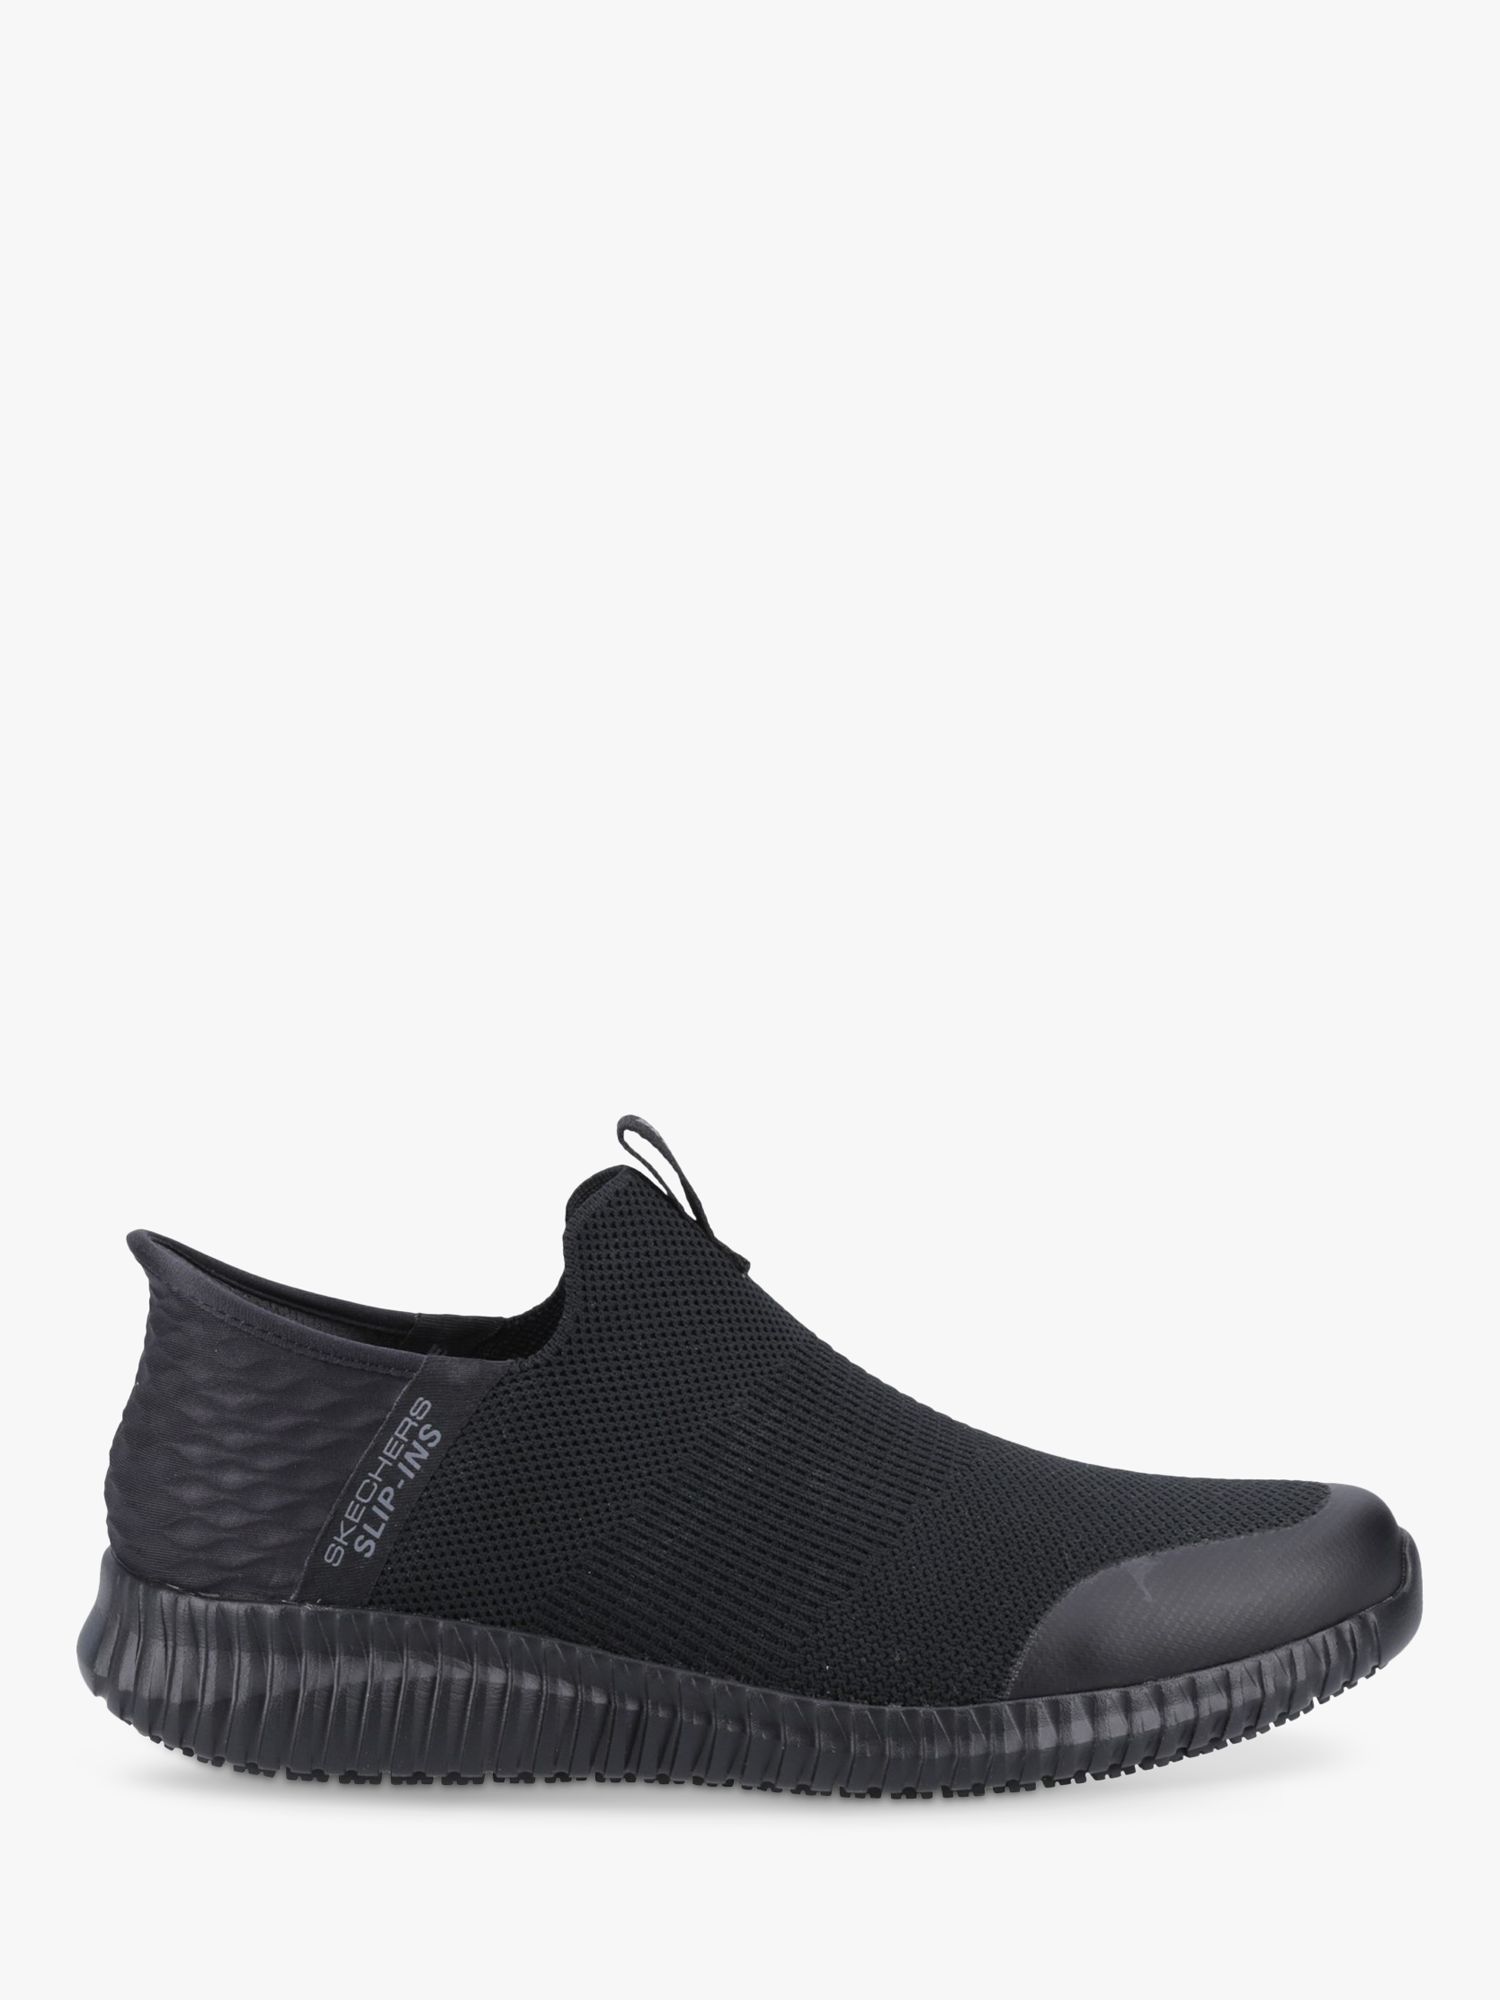 Skechers Cessnock Rylind Slip Resistant Work Shoes, Black at John Lewis ...